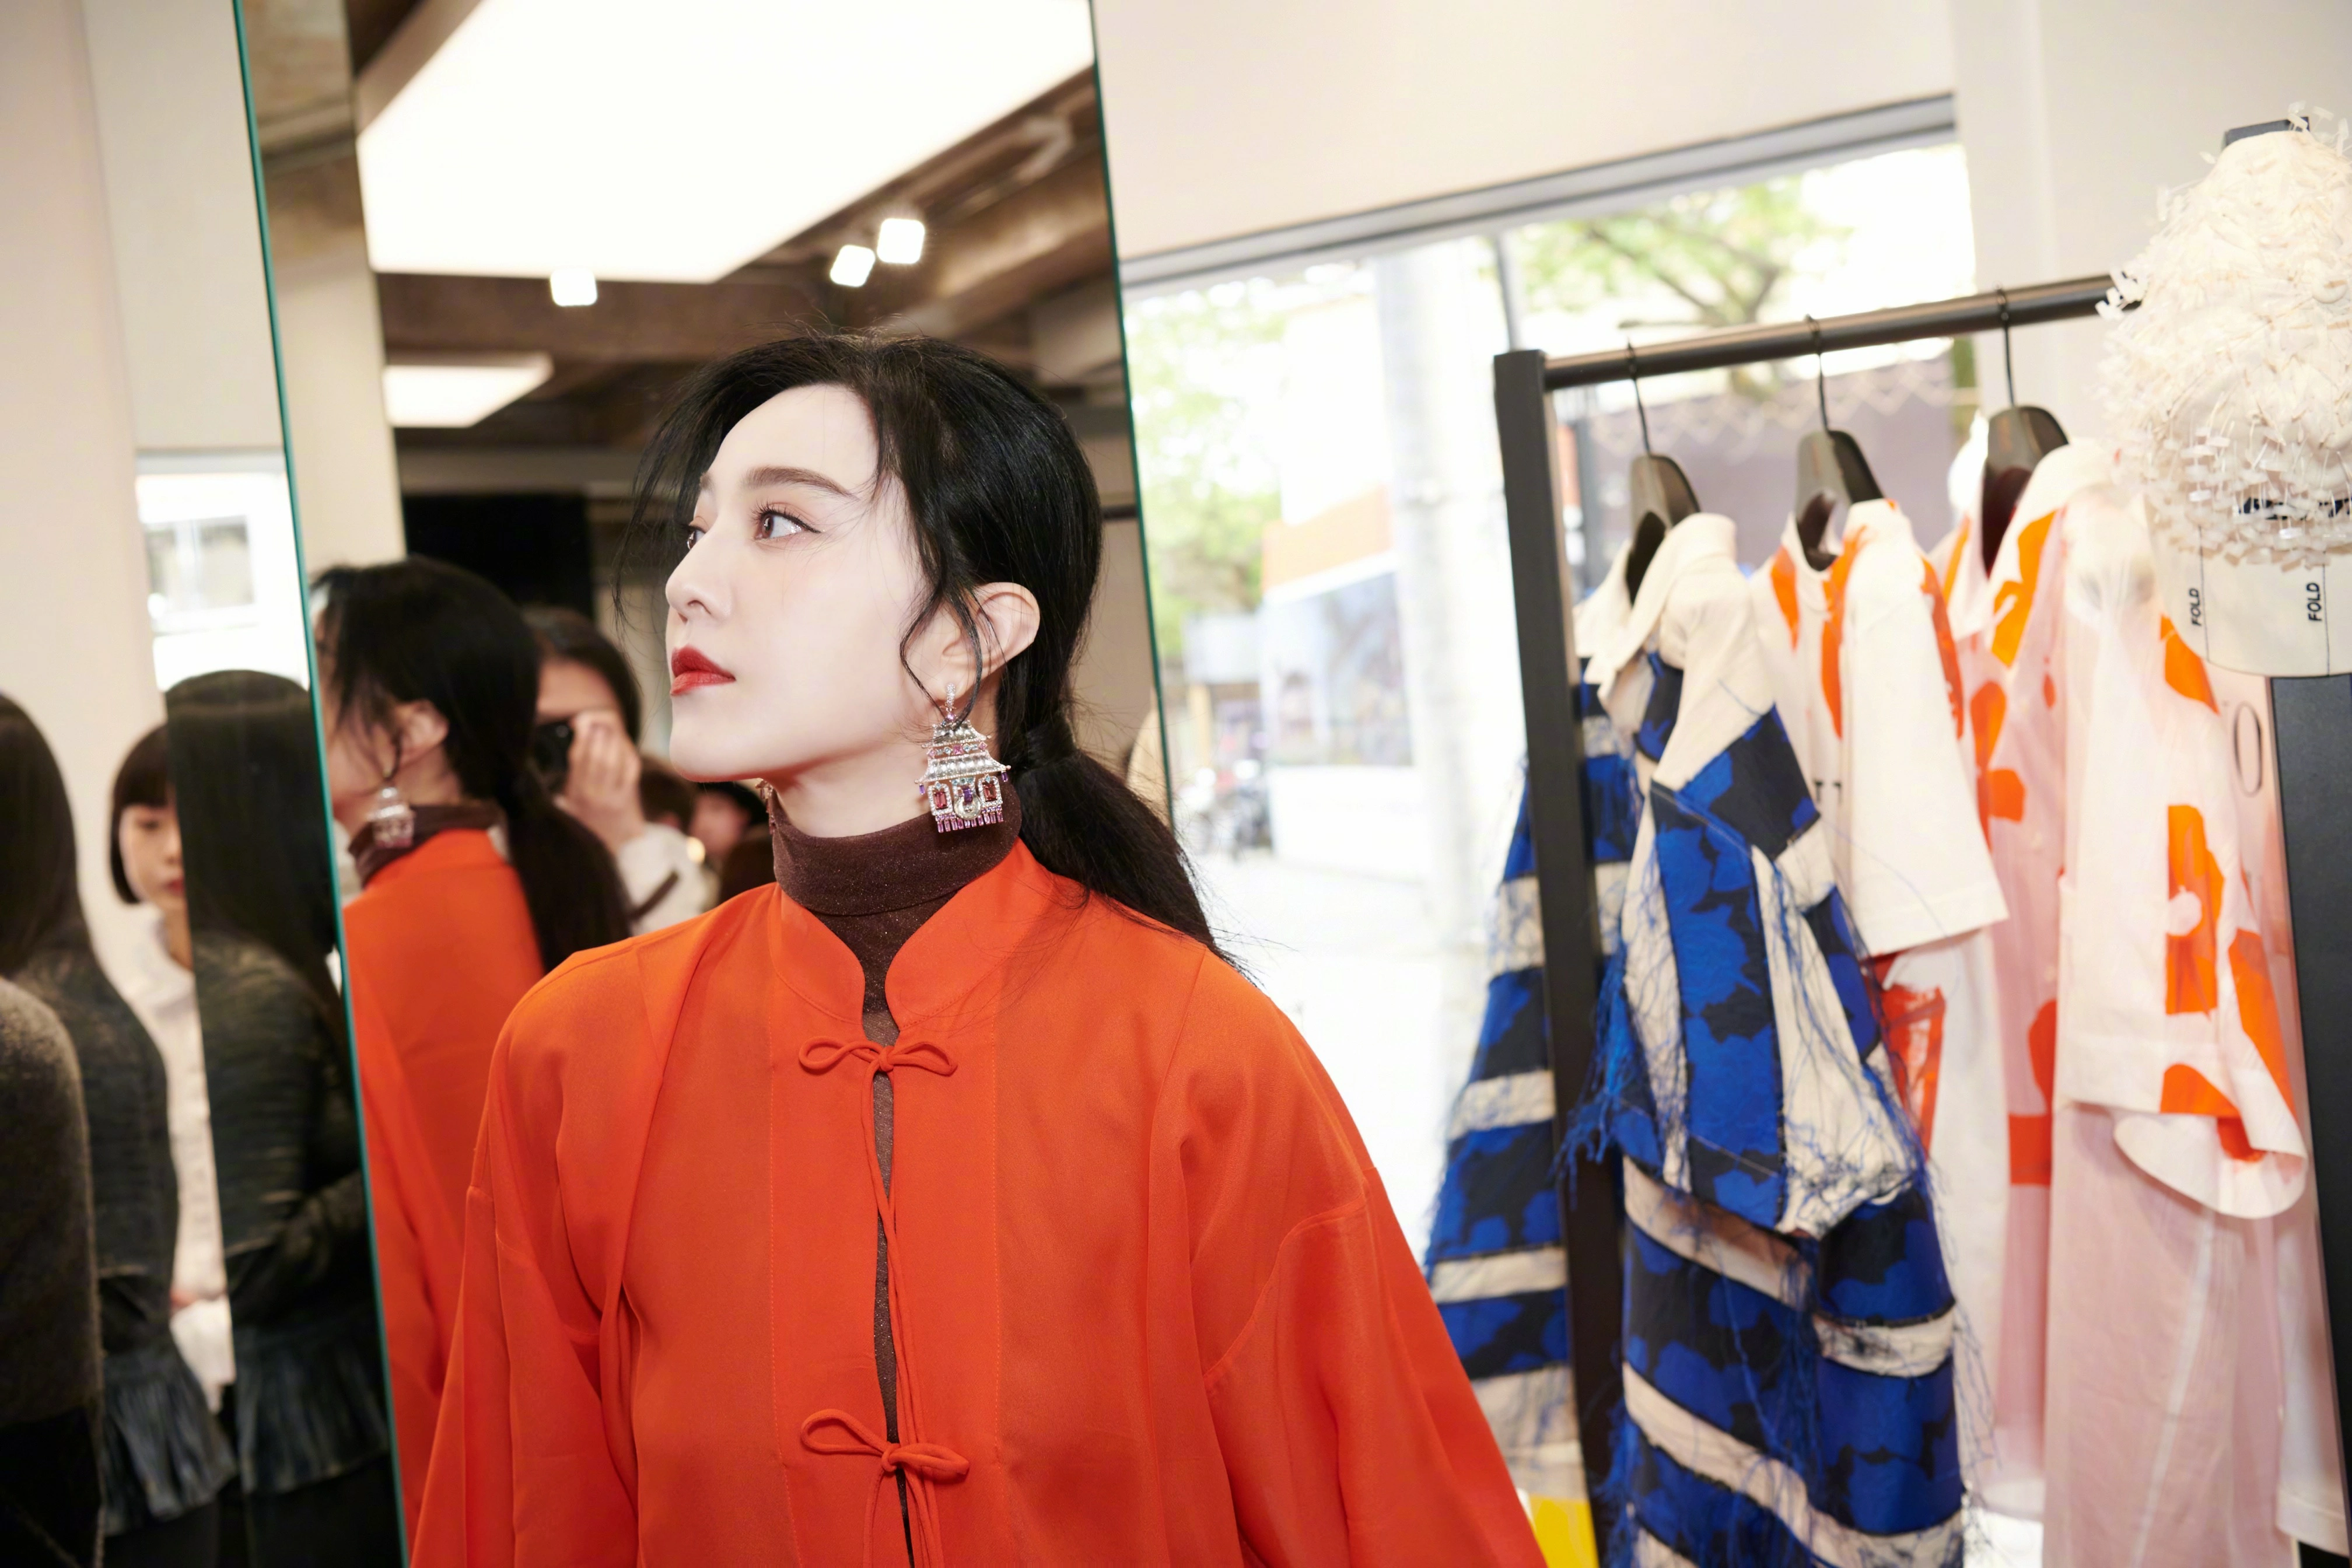 范冰冰橙色复古造型明艳动人 唐装风衣设计诠释中式经典,